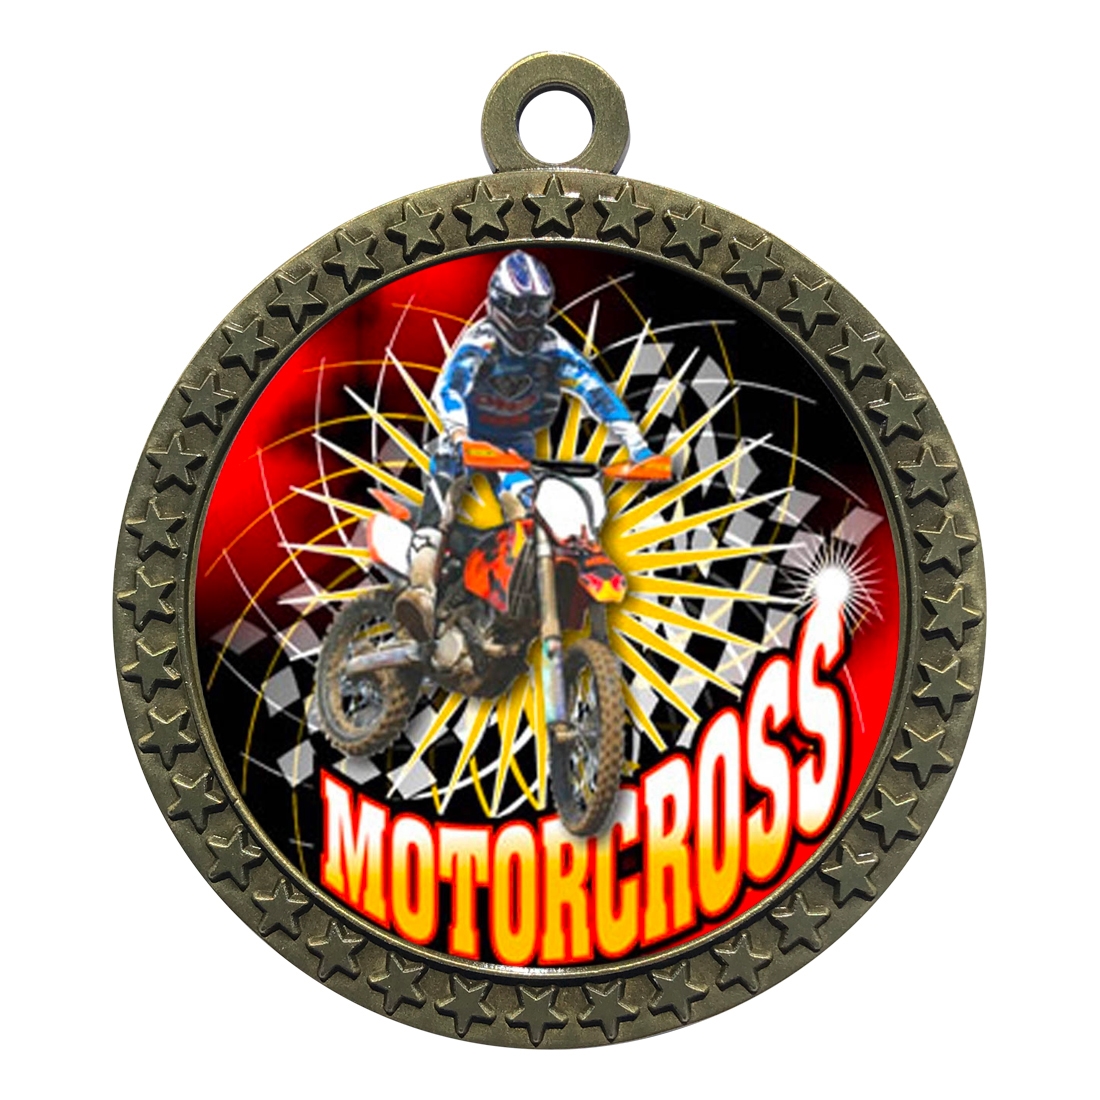 2-1/2" Motocross Medal